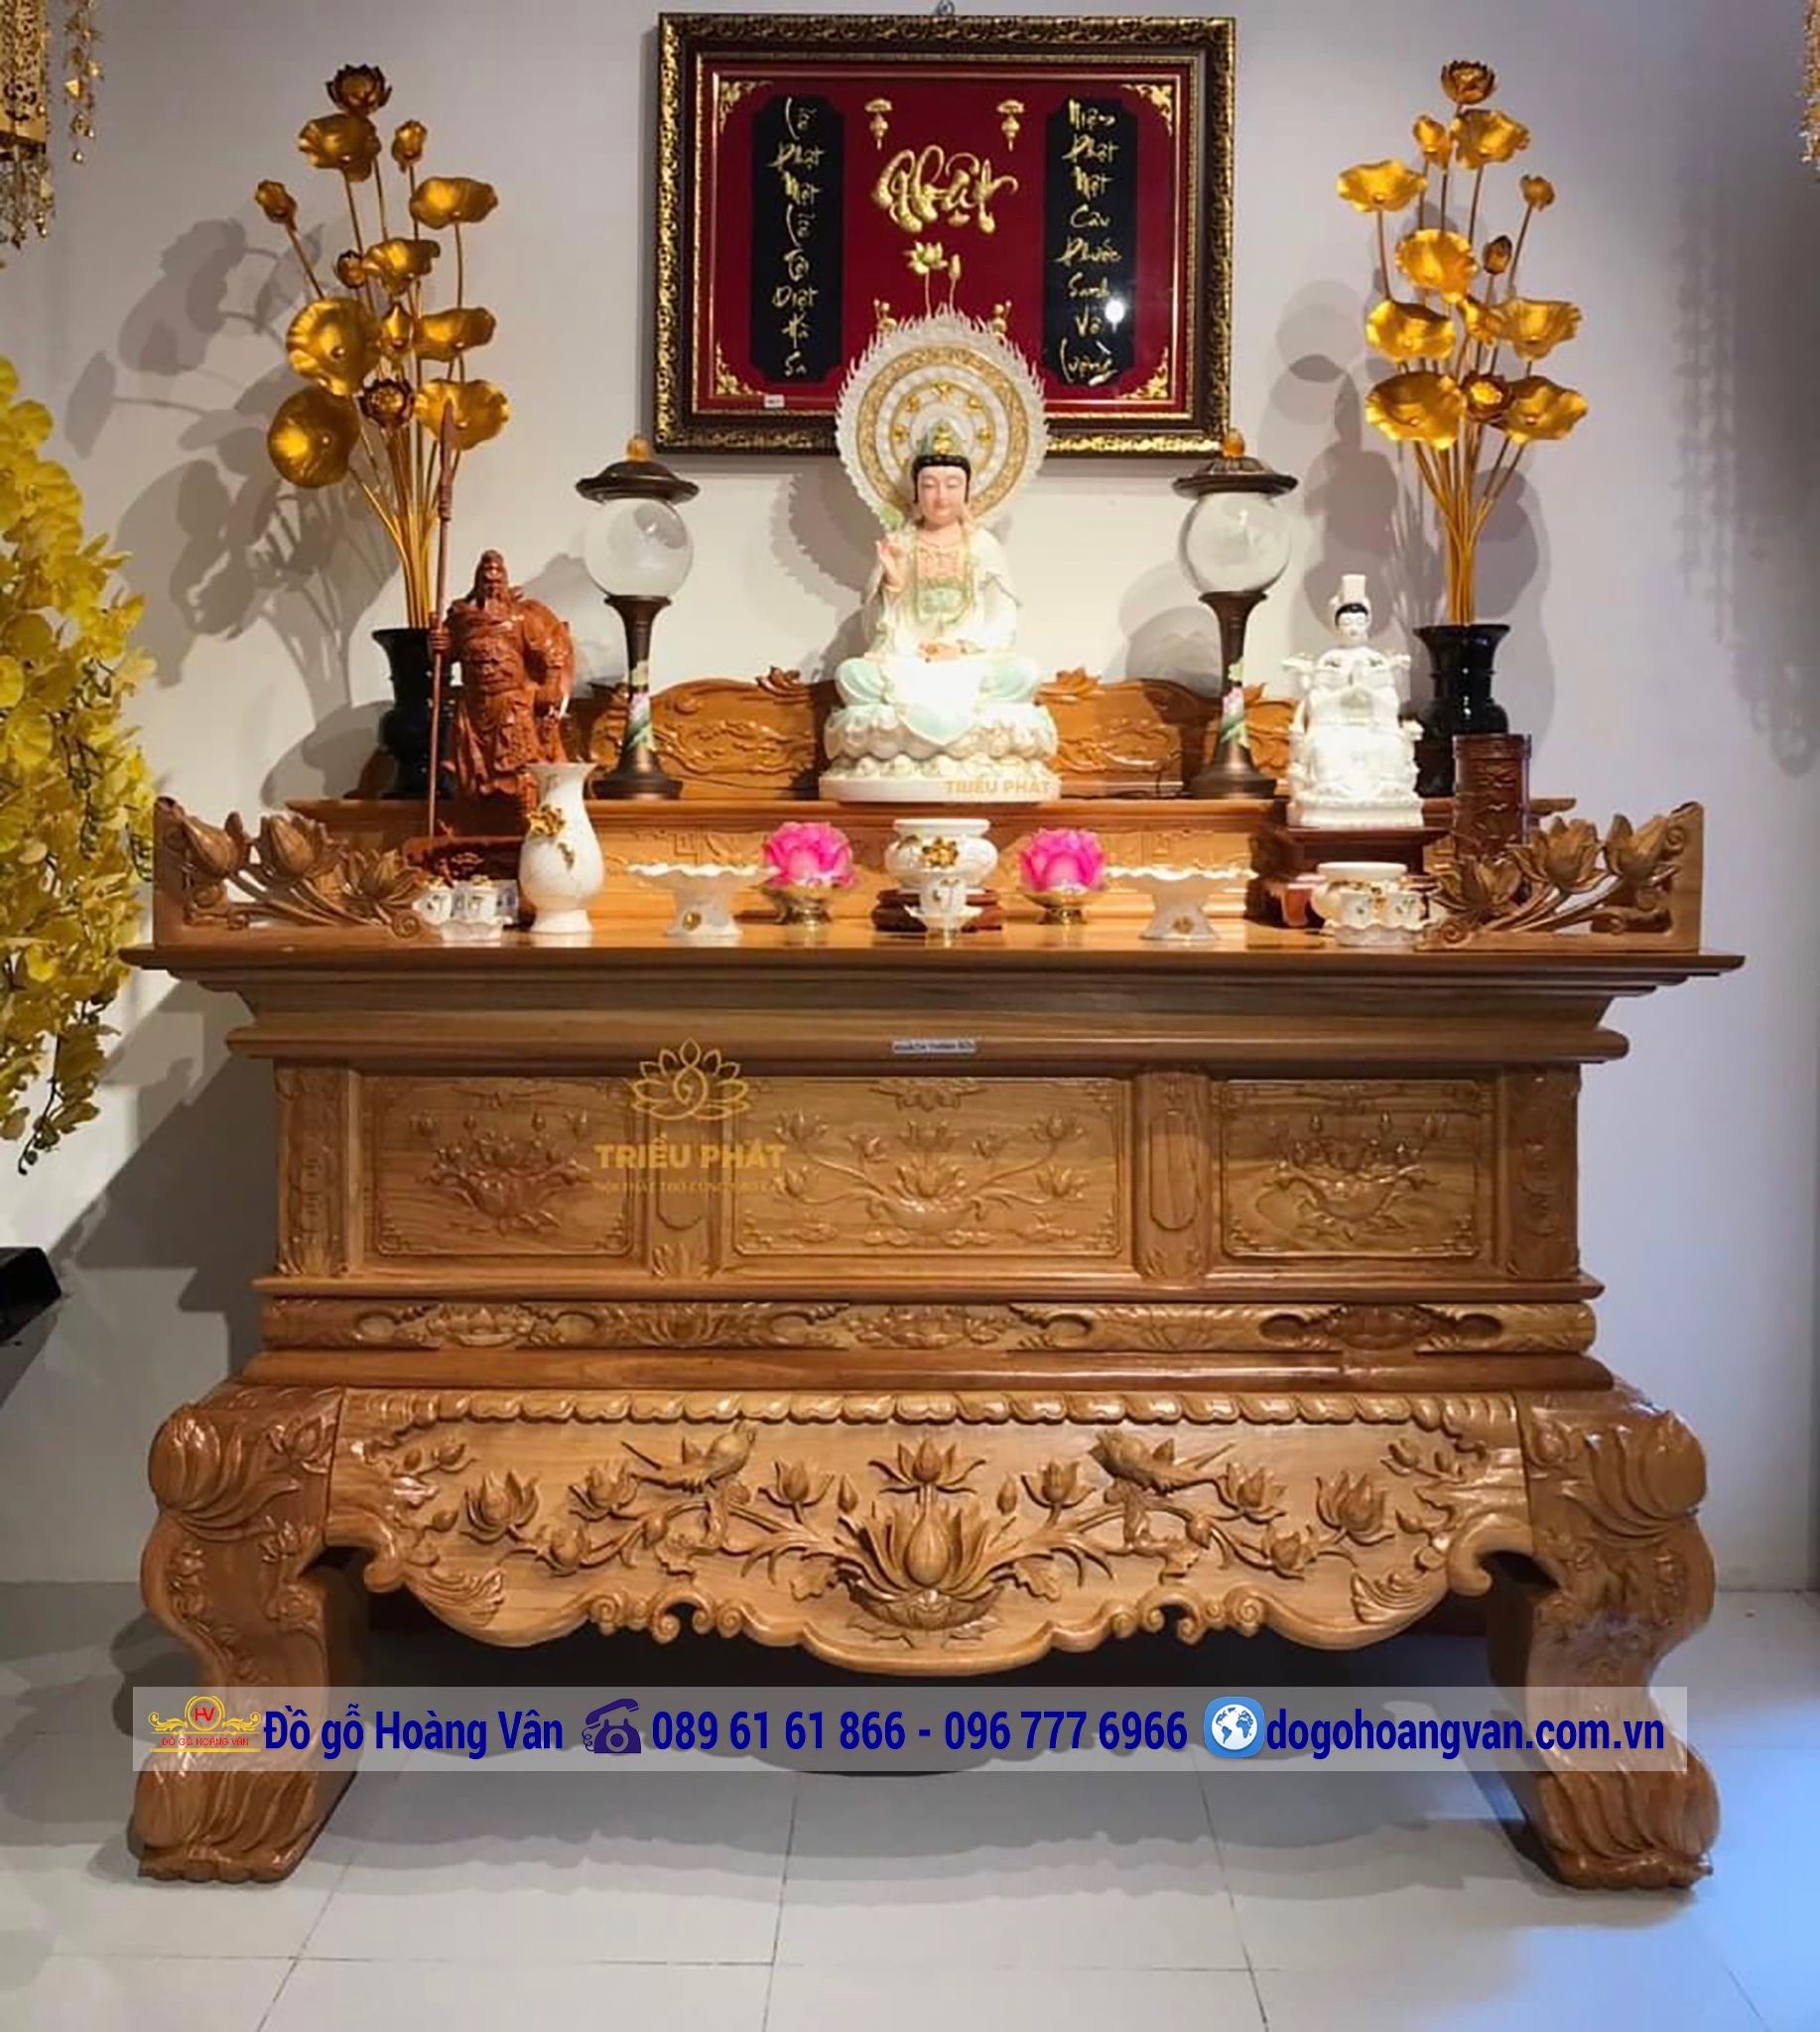 Để có bàn thờ đẹp và tiết kiệm, bàn thờ gỗ giá rẻ không thể thiếu trong nhà bạn. Với những mẫu mã đa dạng, phù hợp với mọi không gian, chắc chắn sẽ làm hài lòng các bạn yêu tinh thần Phật pháp. Bạn đang tìm kiếm bàn thờ gỗ giá rẻ? Hãy tham khảo những hình ảnh đẹp và đầy ý nghĩa tại đây.